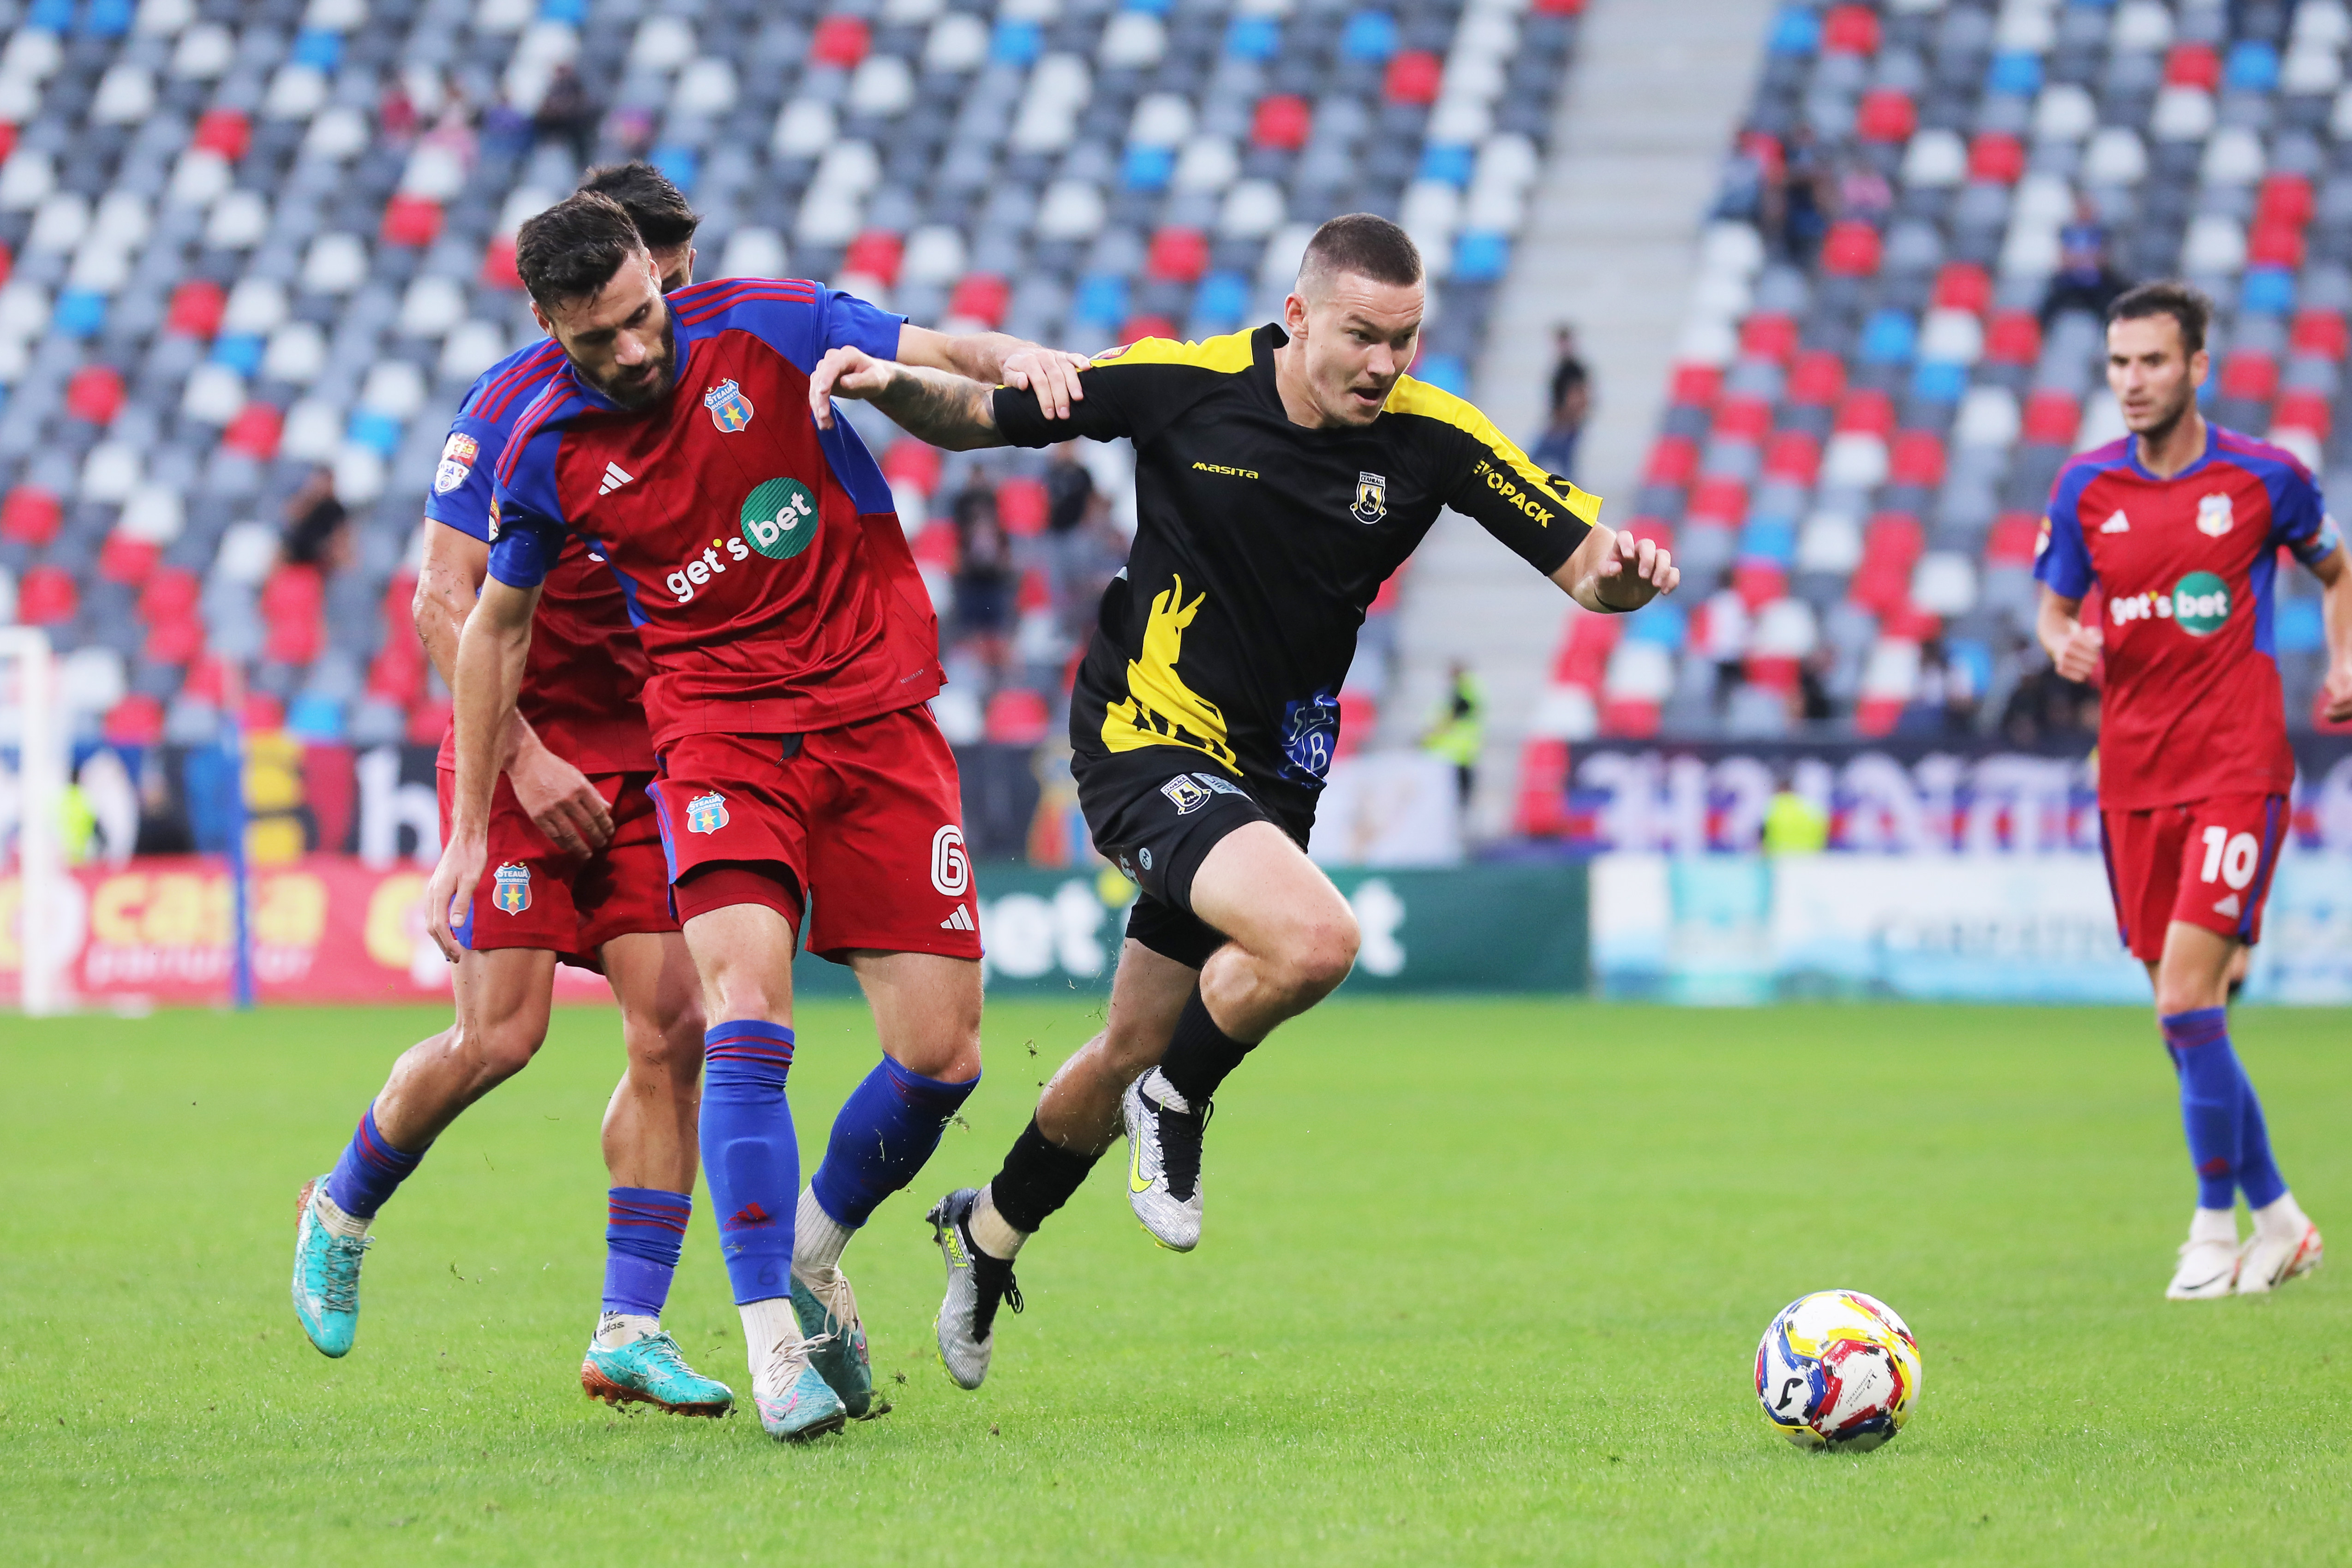 Steaua - Ceahlăul Piatra Neamț 3-1. ”Militarii” au obținut cea de-a treia victorie din acest campionat